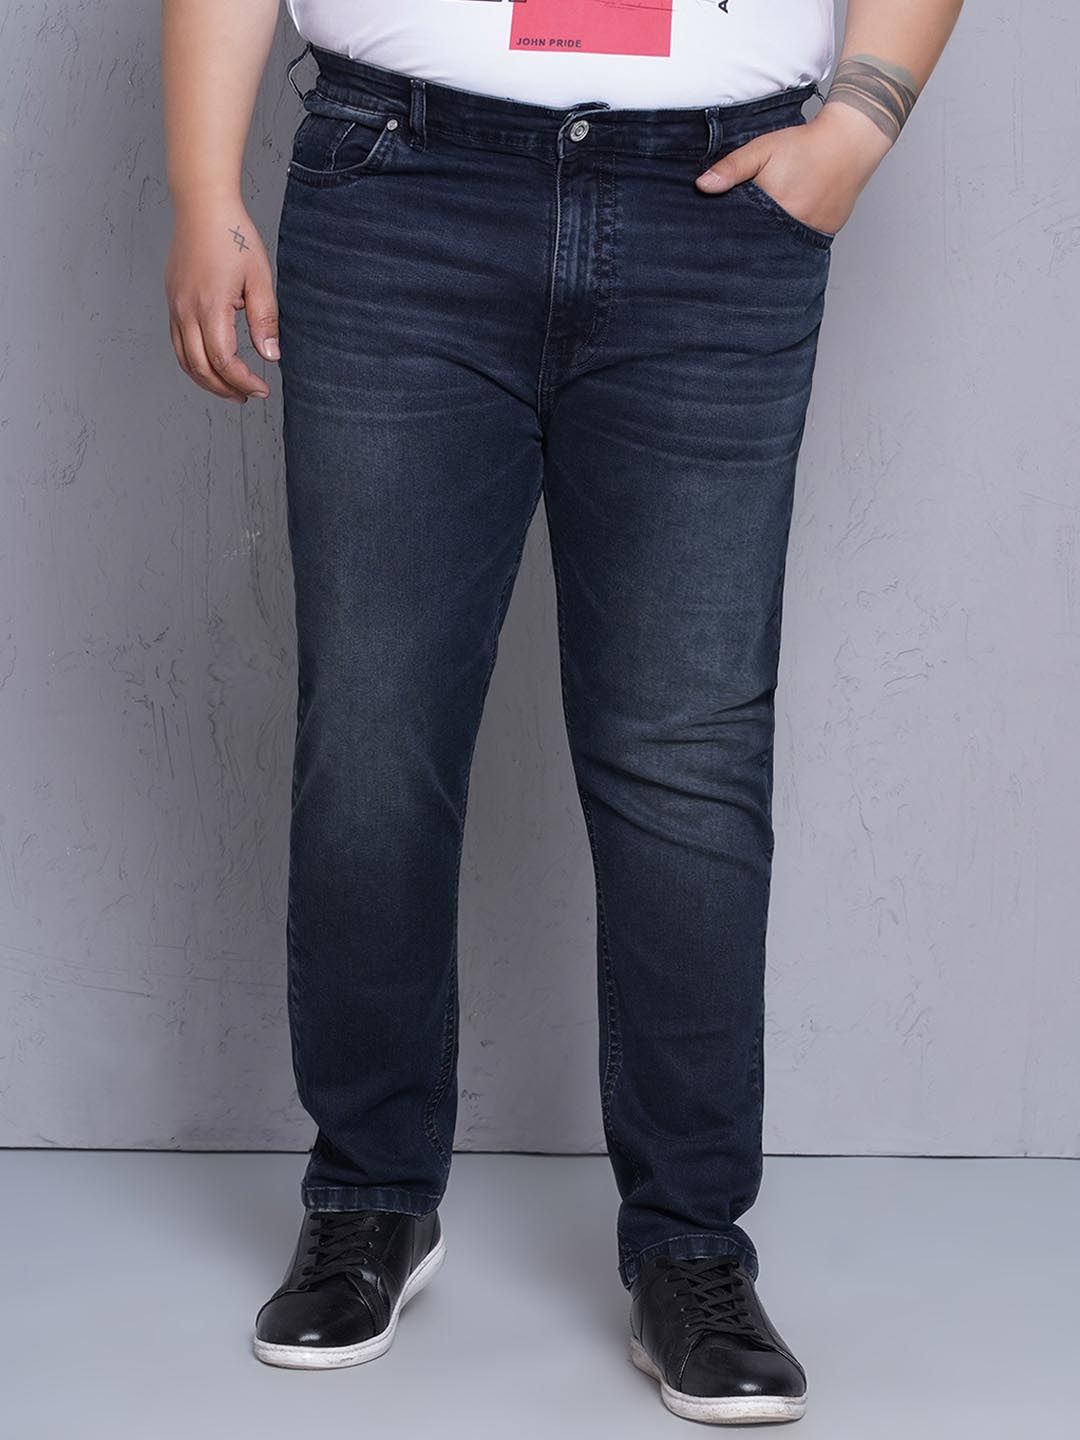 bottomwear/jeans/JPJ12436/jpj12436-6.jpg